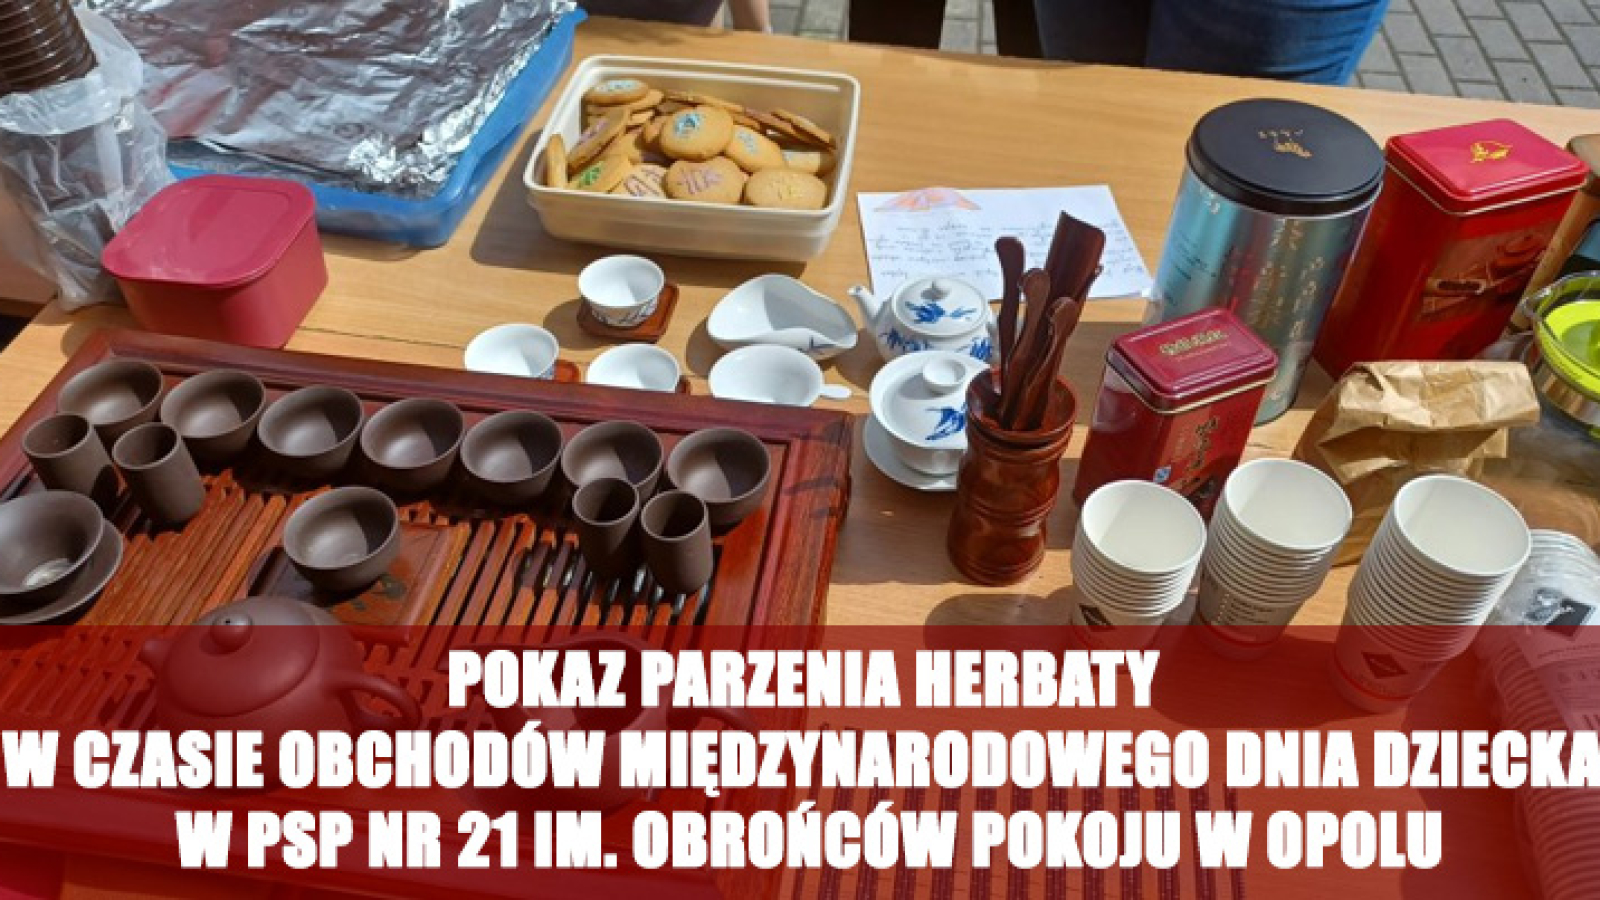 Pokaz parzenia herbaty w czasie obchodów Międzynarodowego Dnia Dziecka w PSP nr 21 im. Obrońców Pokoju w Opolu